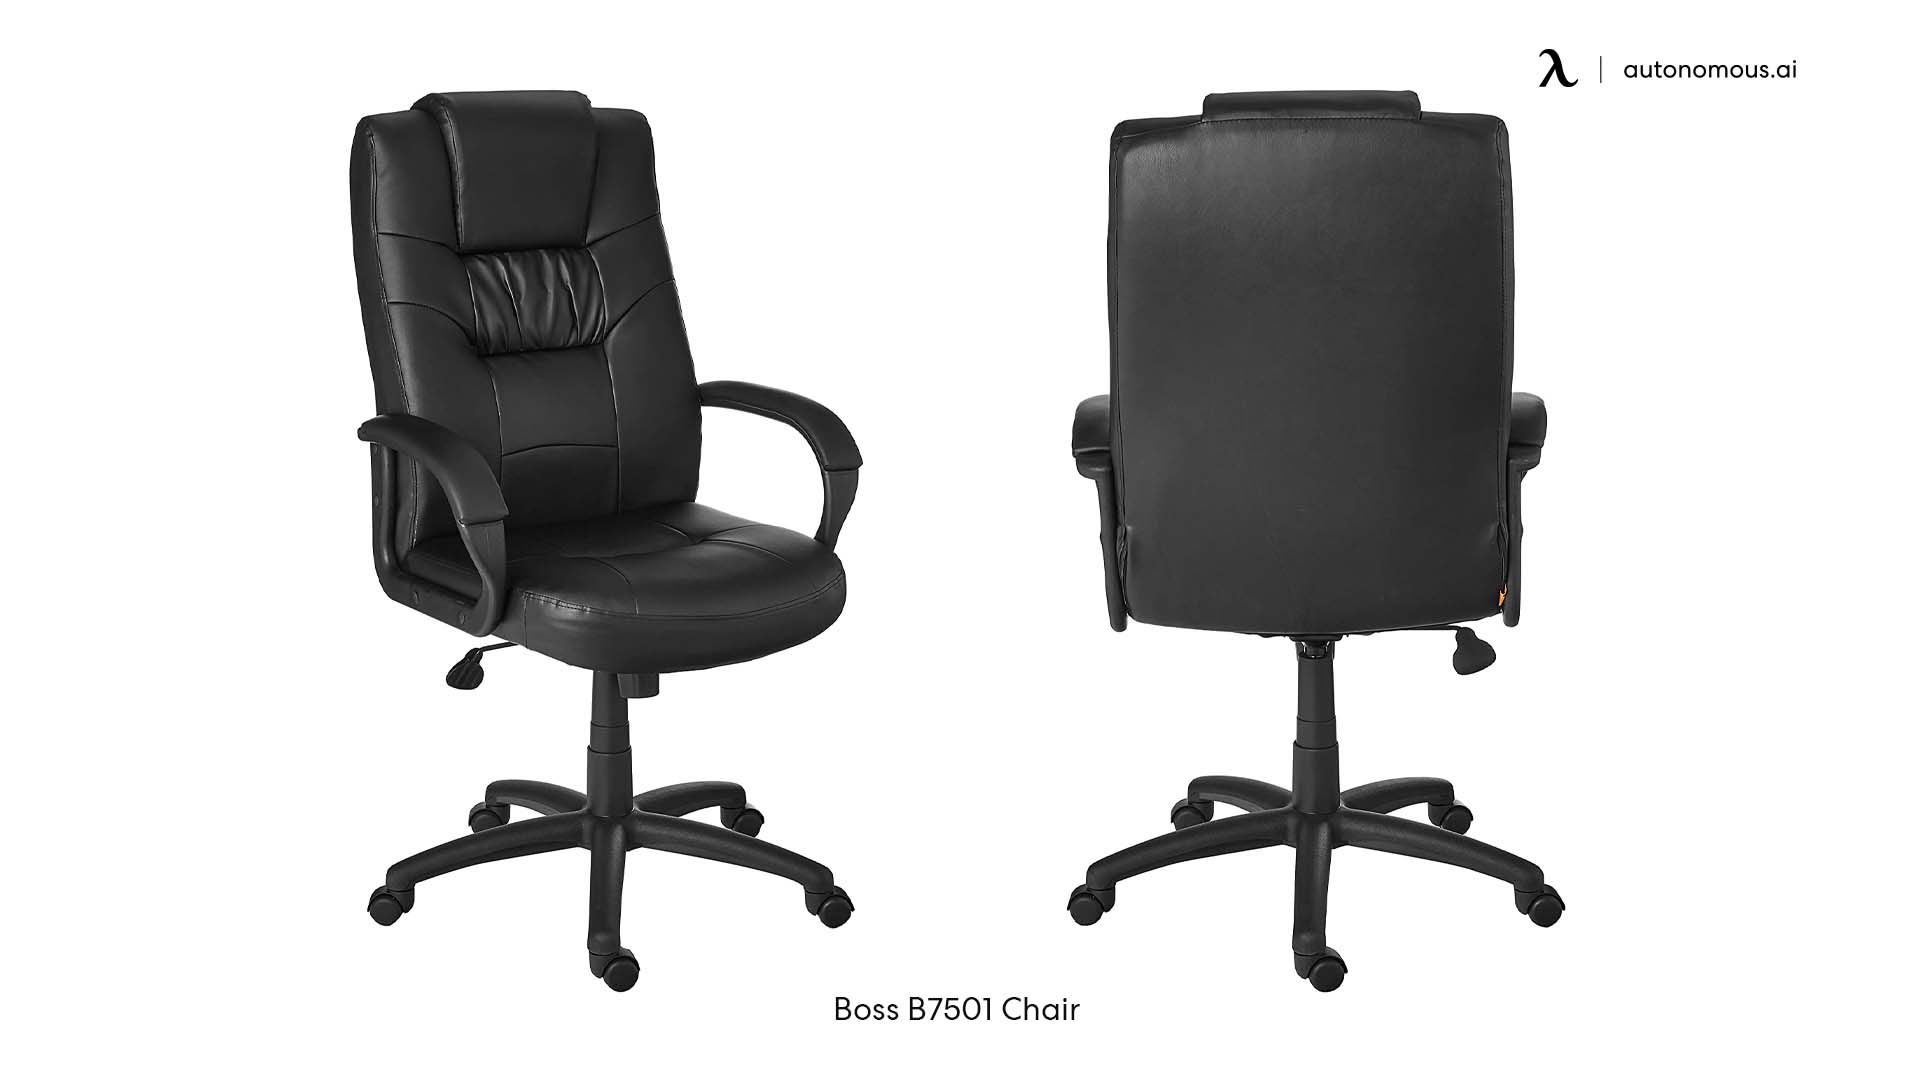 Boss B7501 24-hour chair